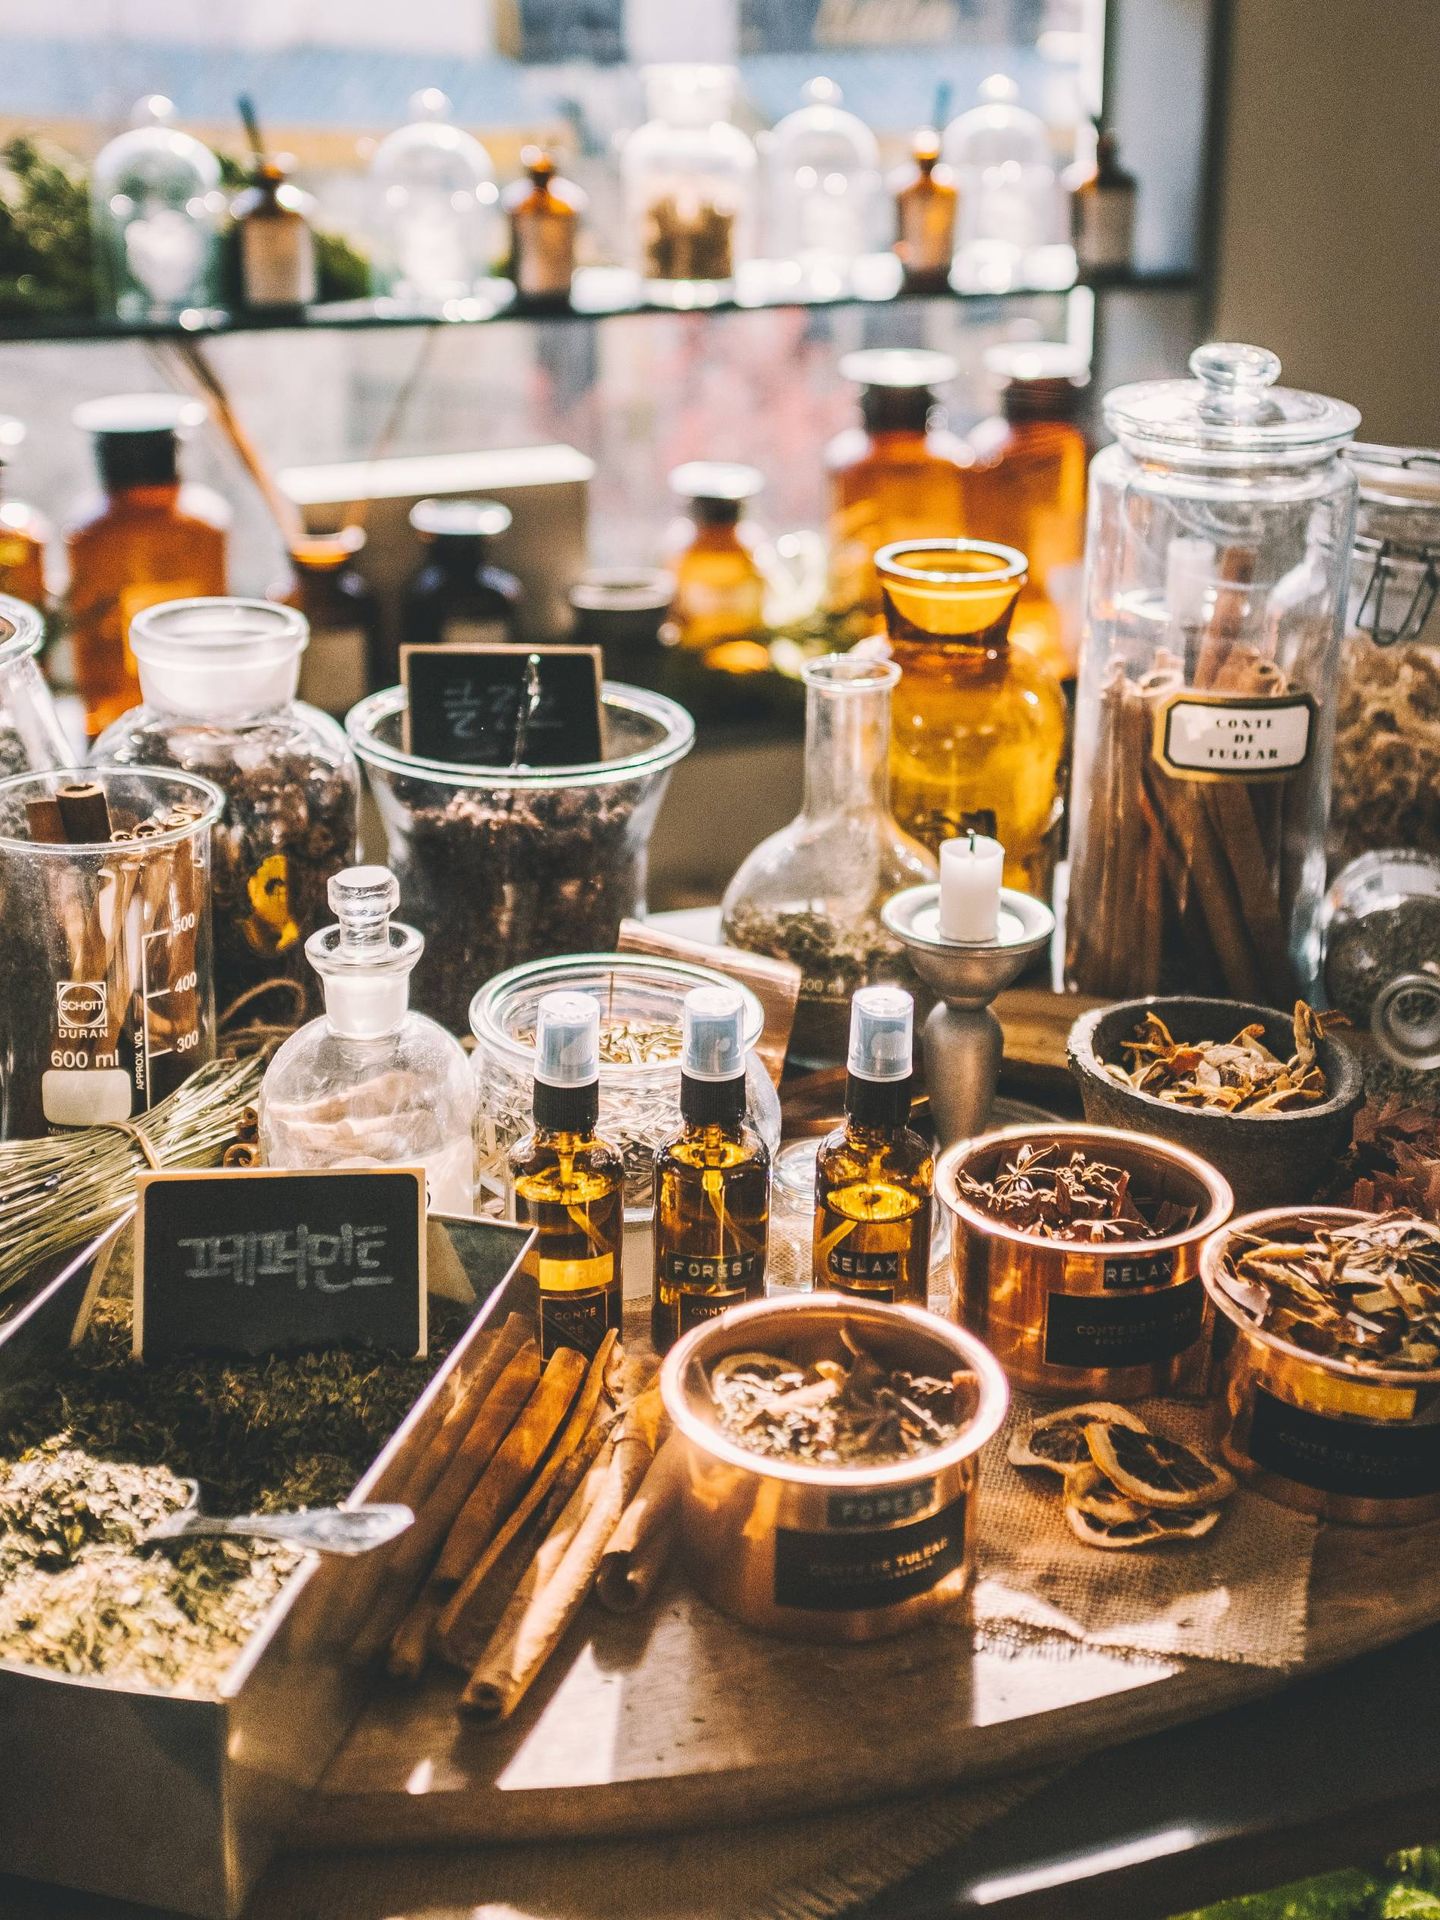 Ciencia y alquimia del perfume. (Unsplash)